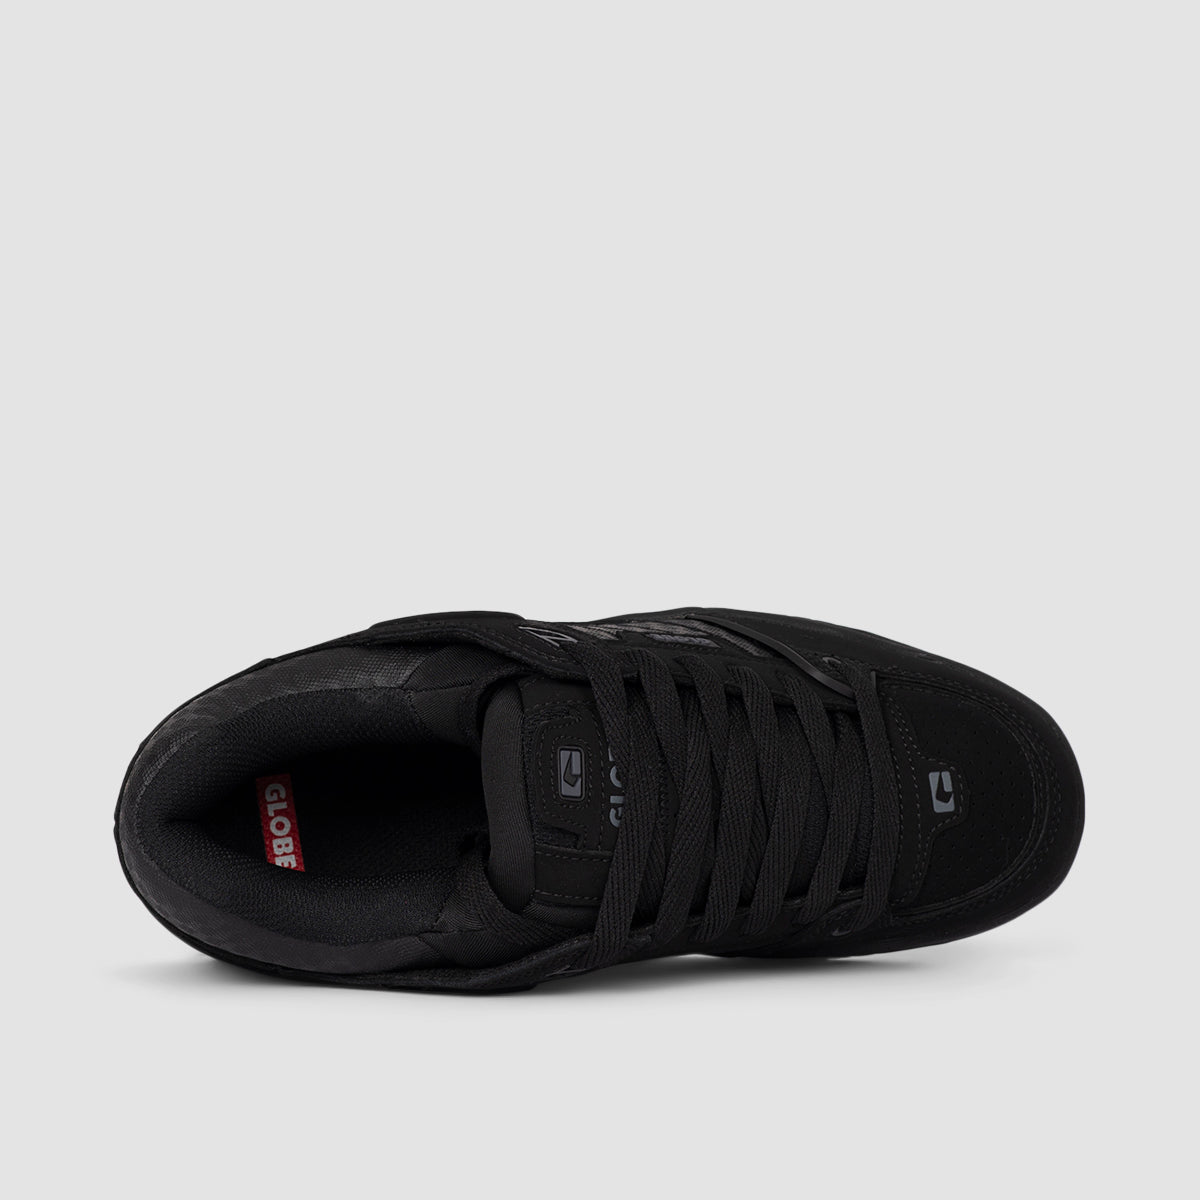 Globe Fusion Shoes - Black/Black